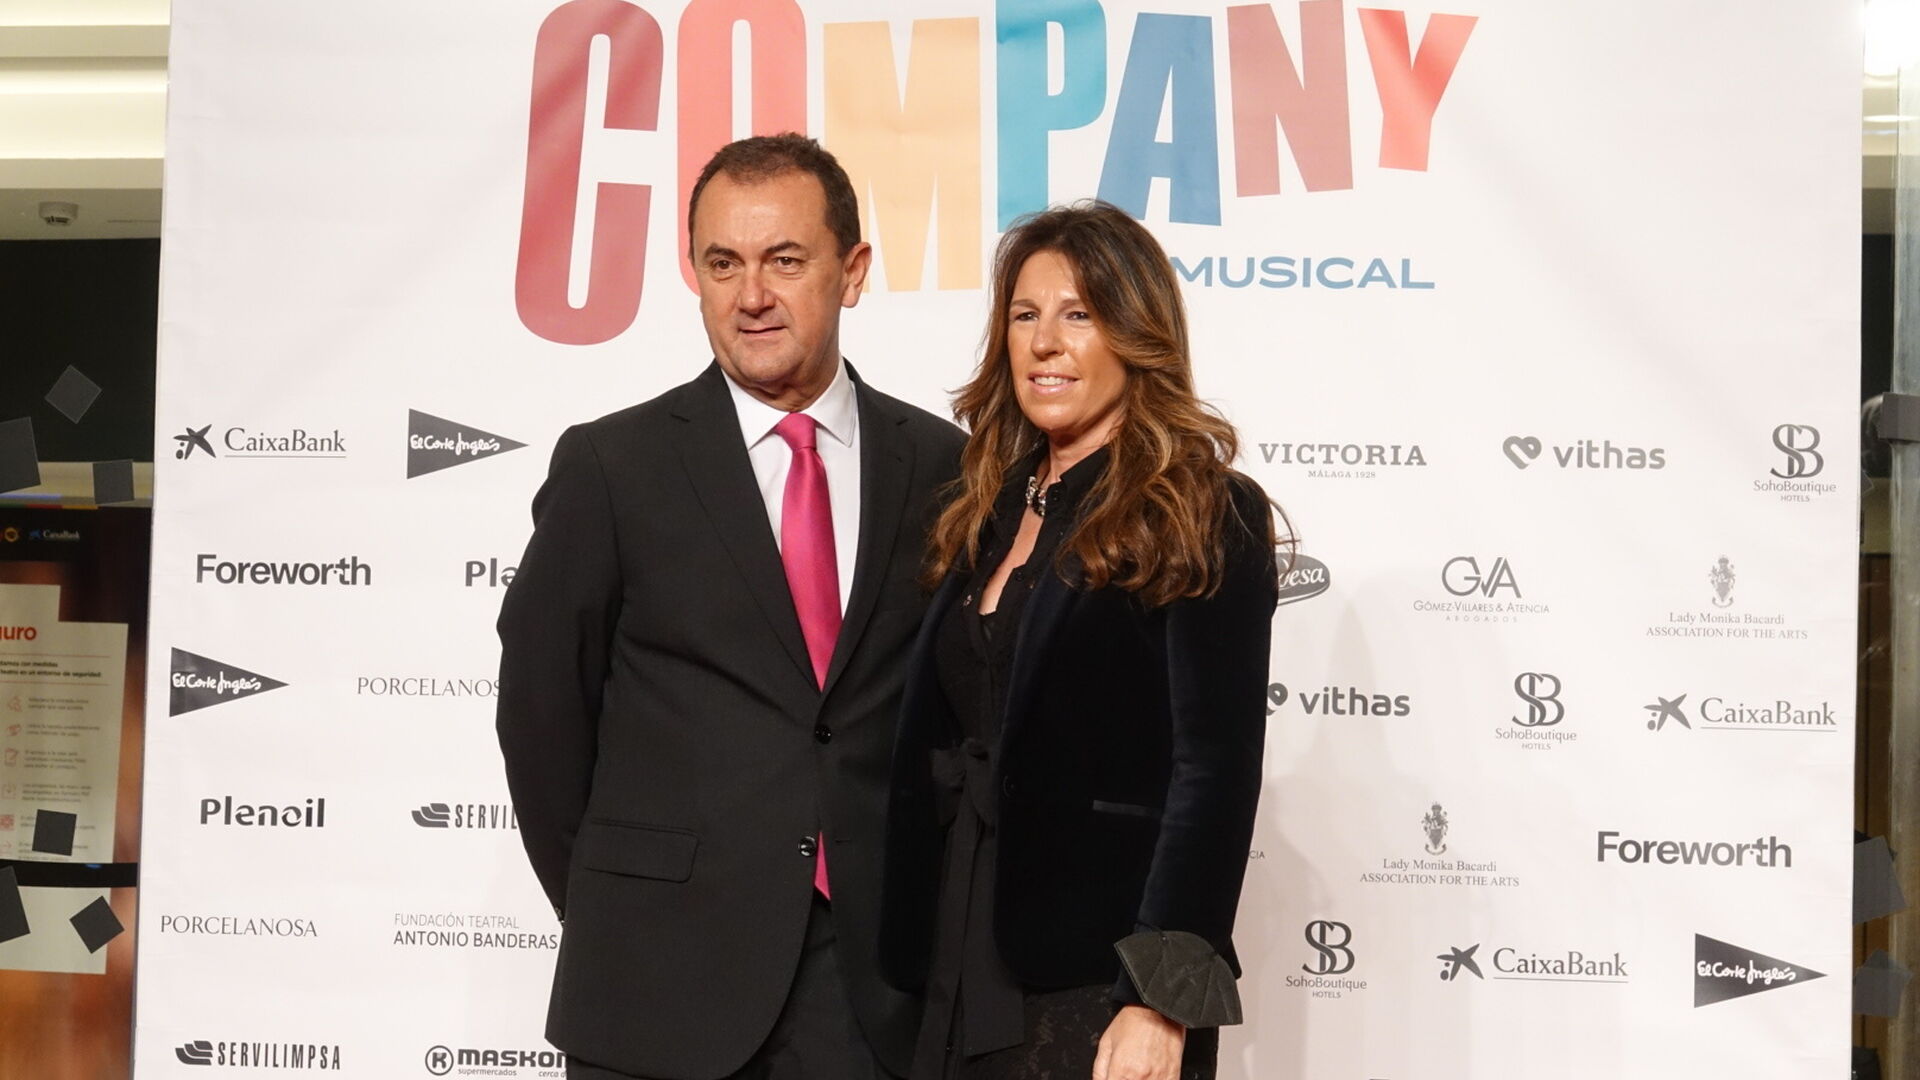 Las fotos de la alfombra roja por el estreno de 'Company' con Banderas en el Teatro del Soho